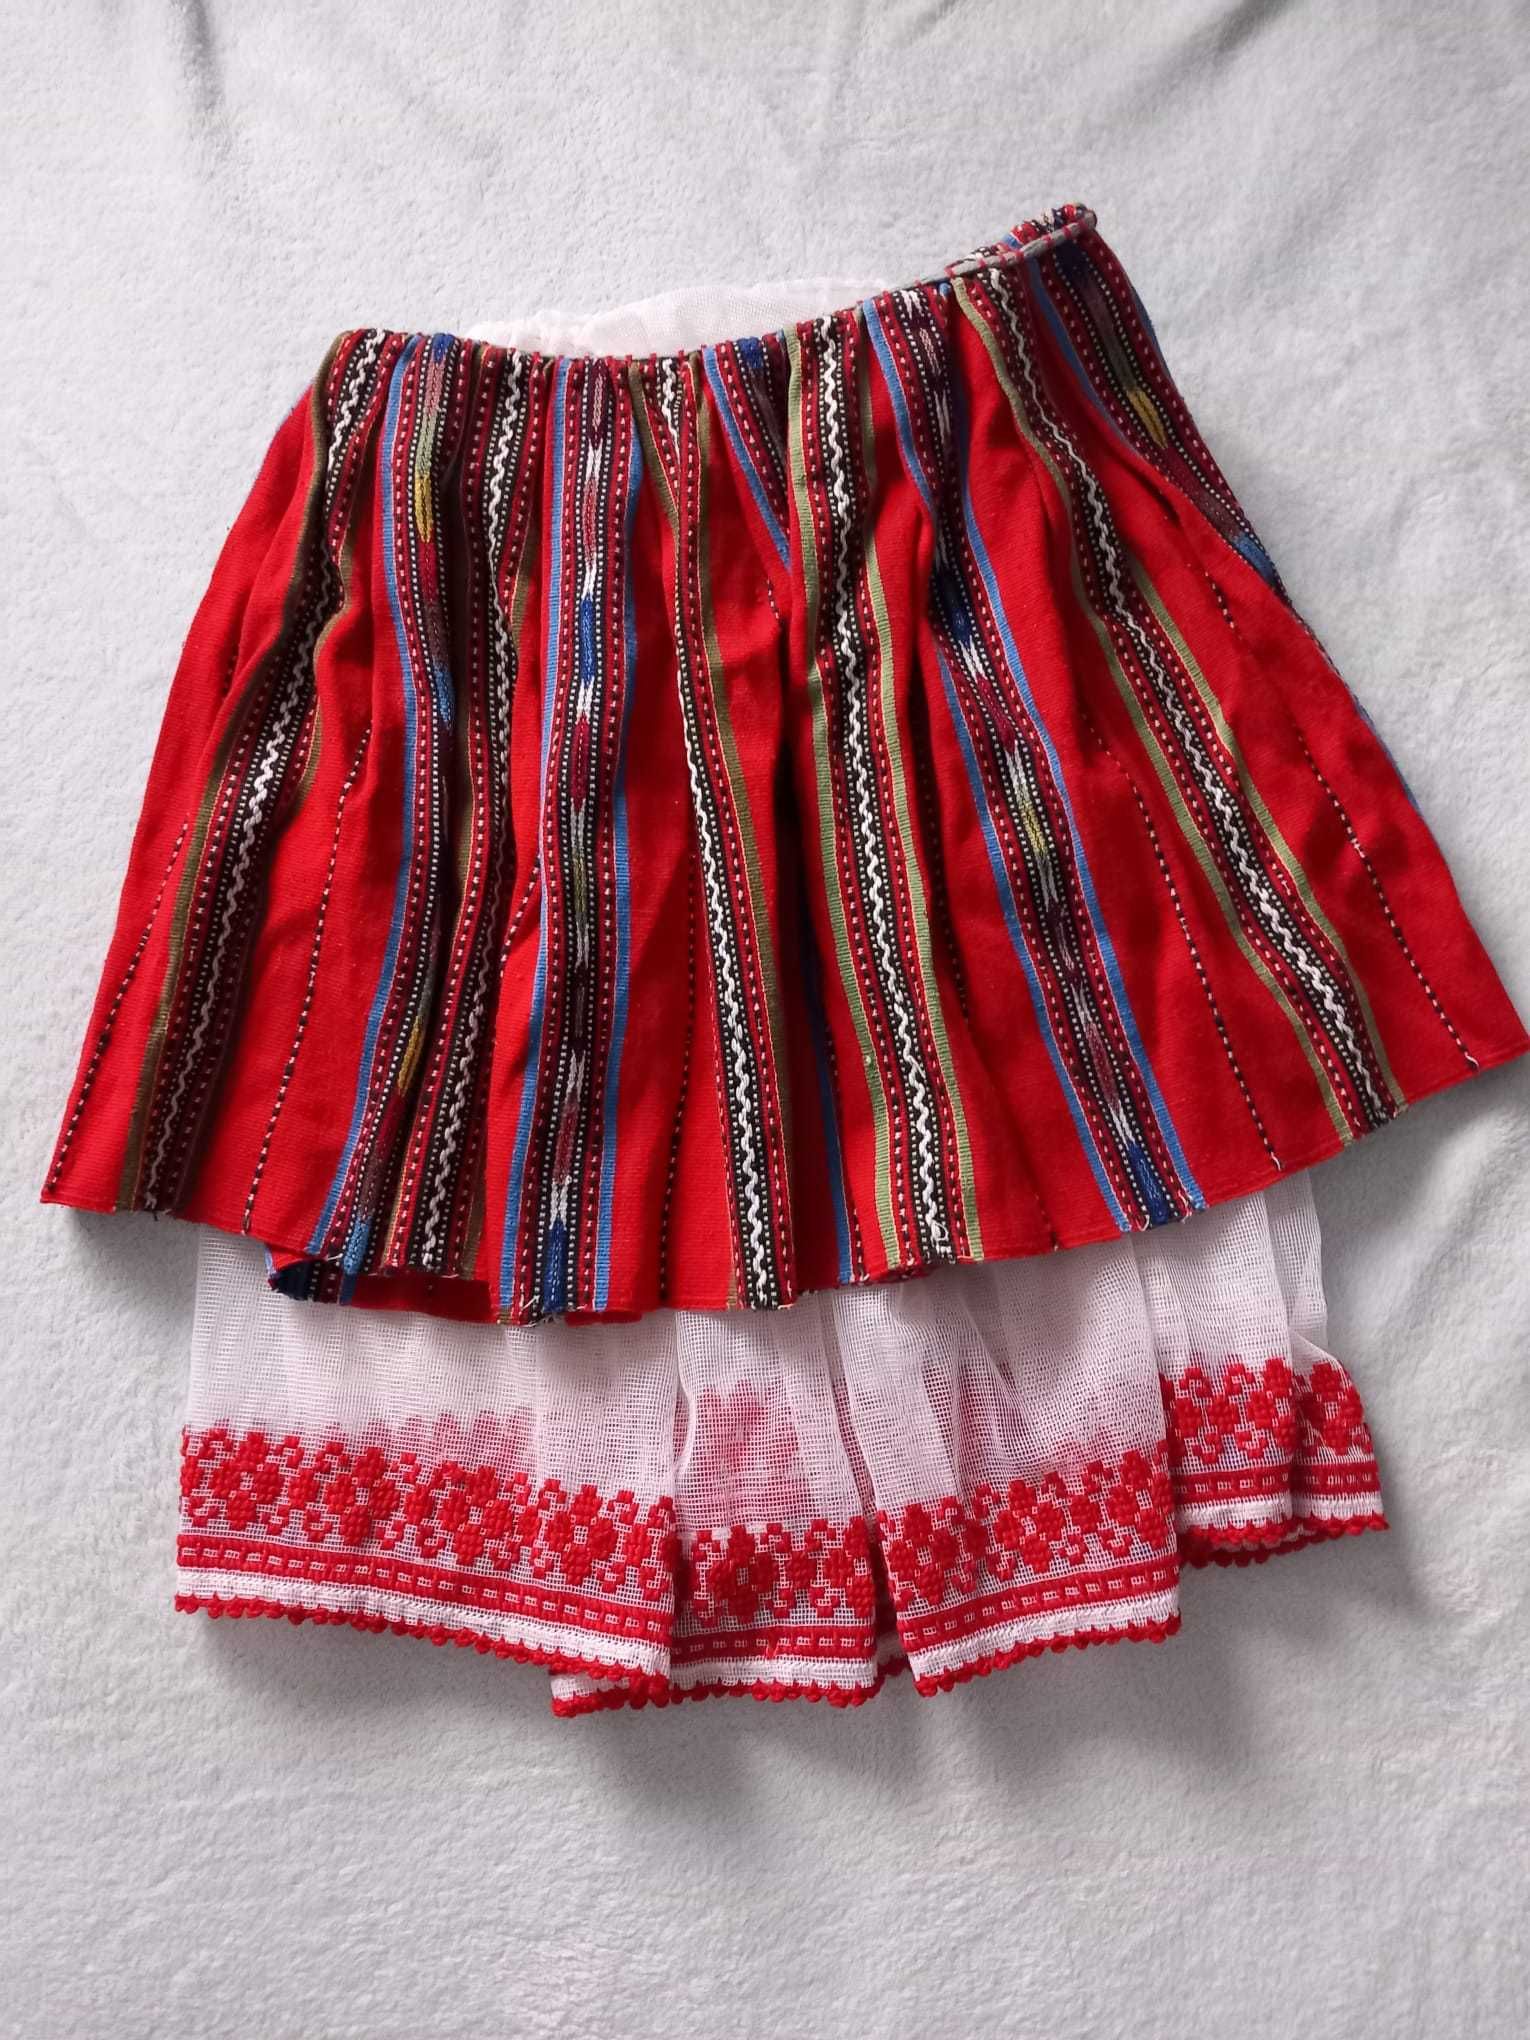 Costum national copii de fete intre 5-8 ani/original, cusut de mana .